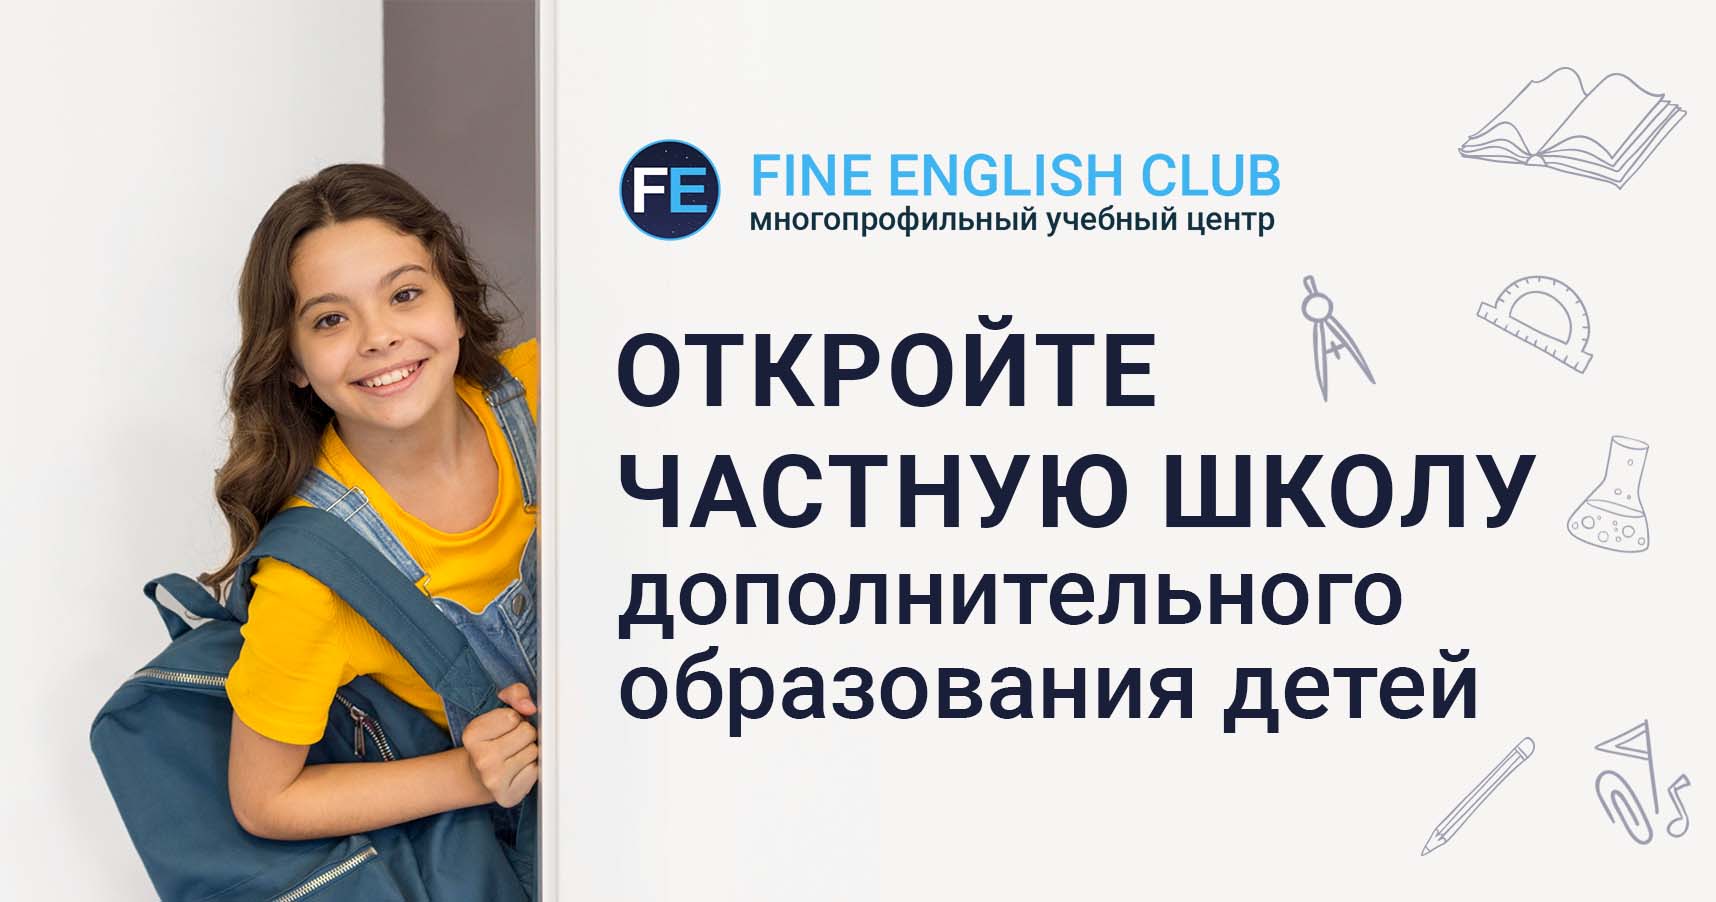 Франшиза образовательной школы Fine English Club